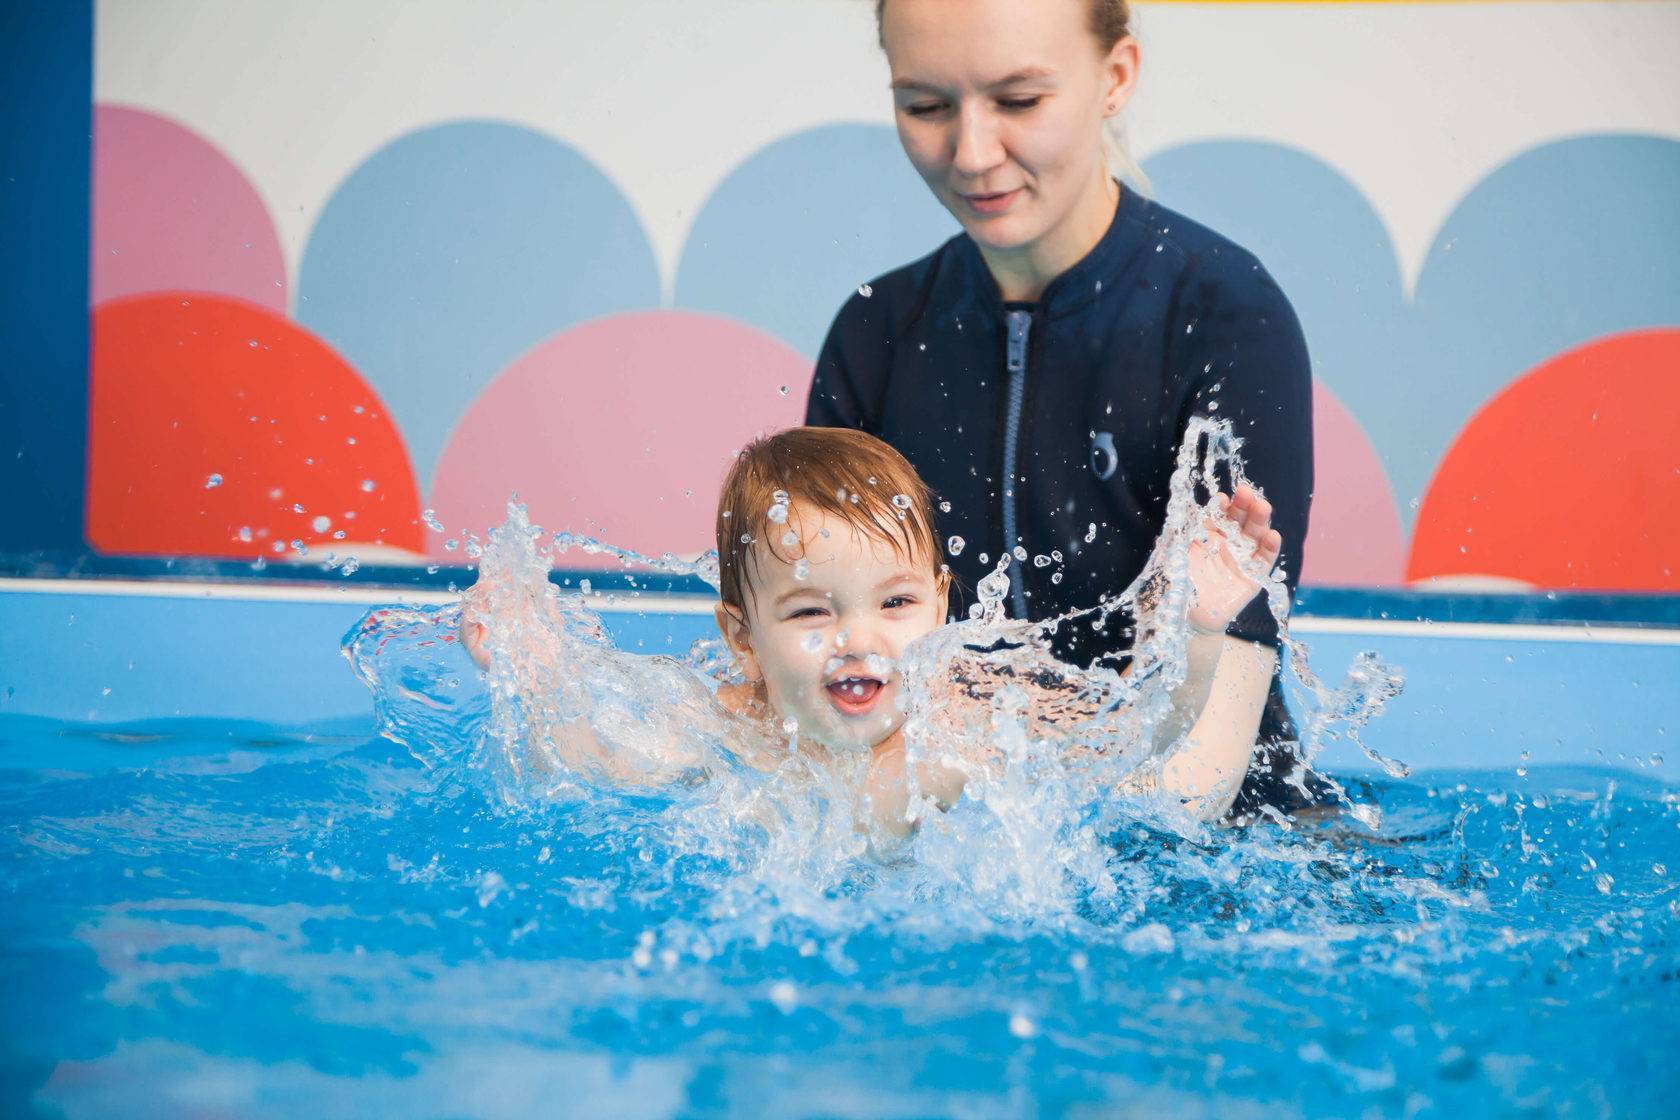 Видео уроки плавания для начинающих - как научиться самостоятельно плавать взрослому, упражнения для обучения в бассейне